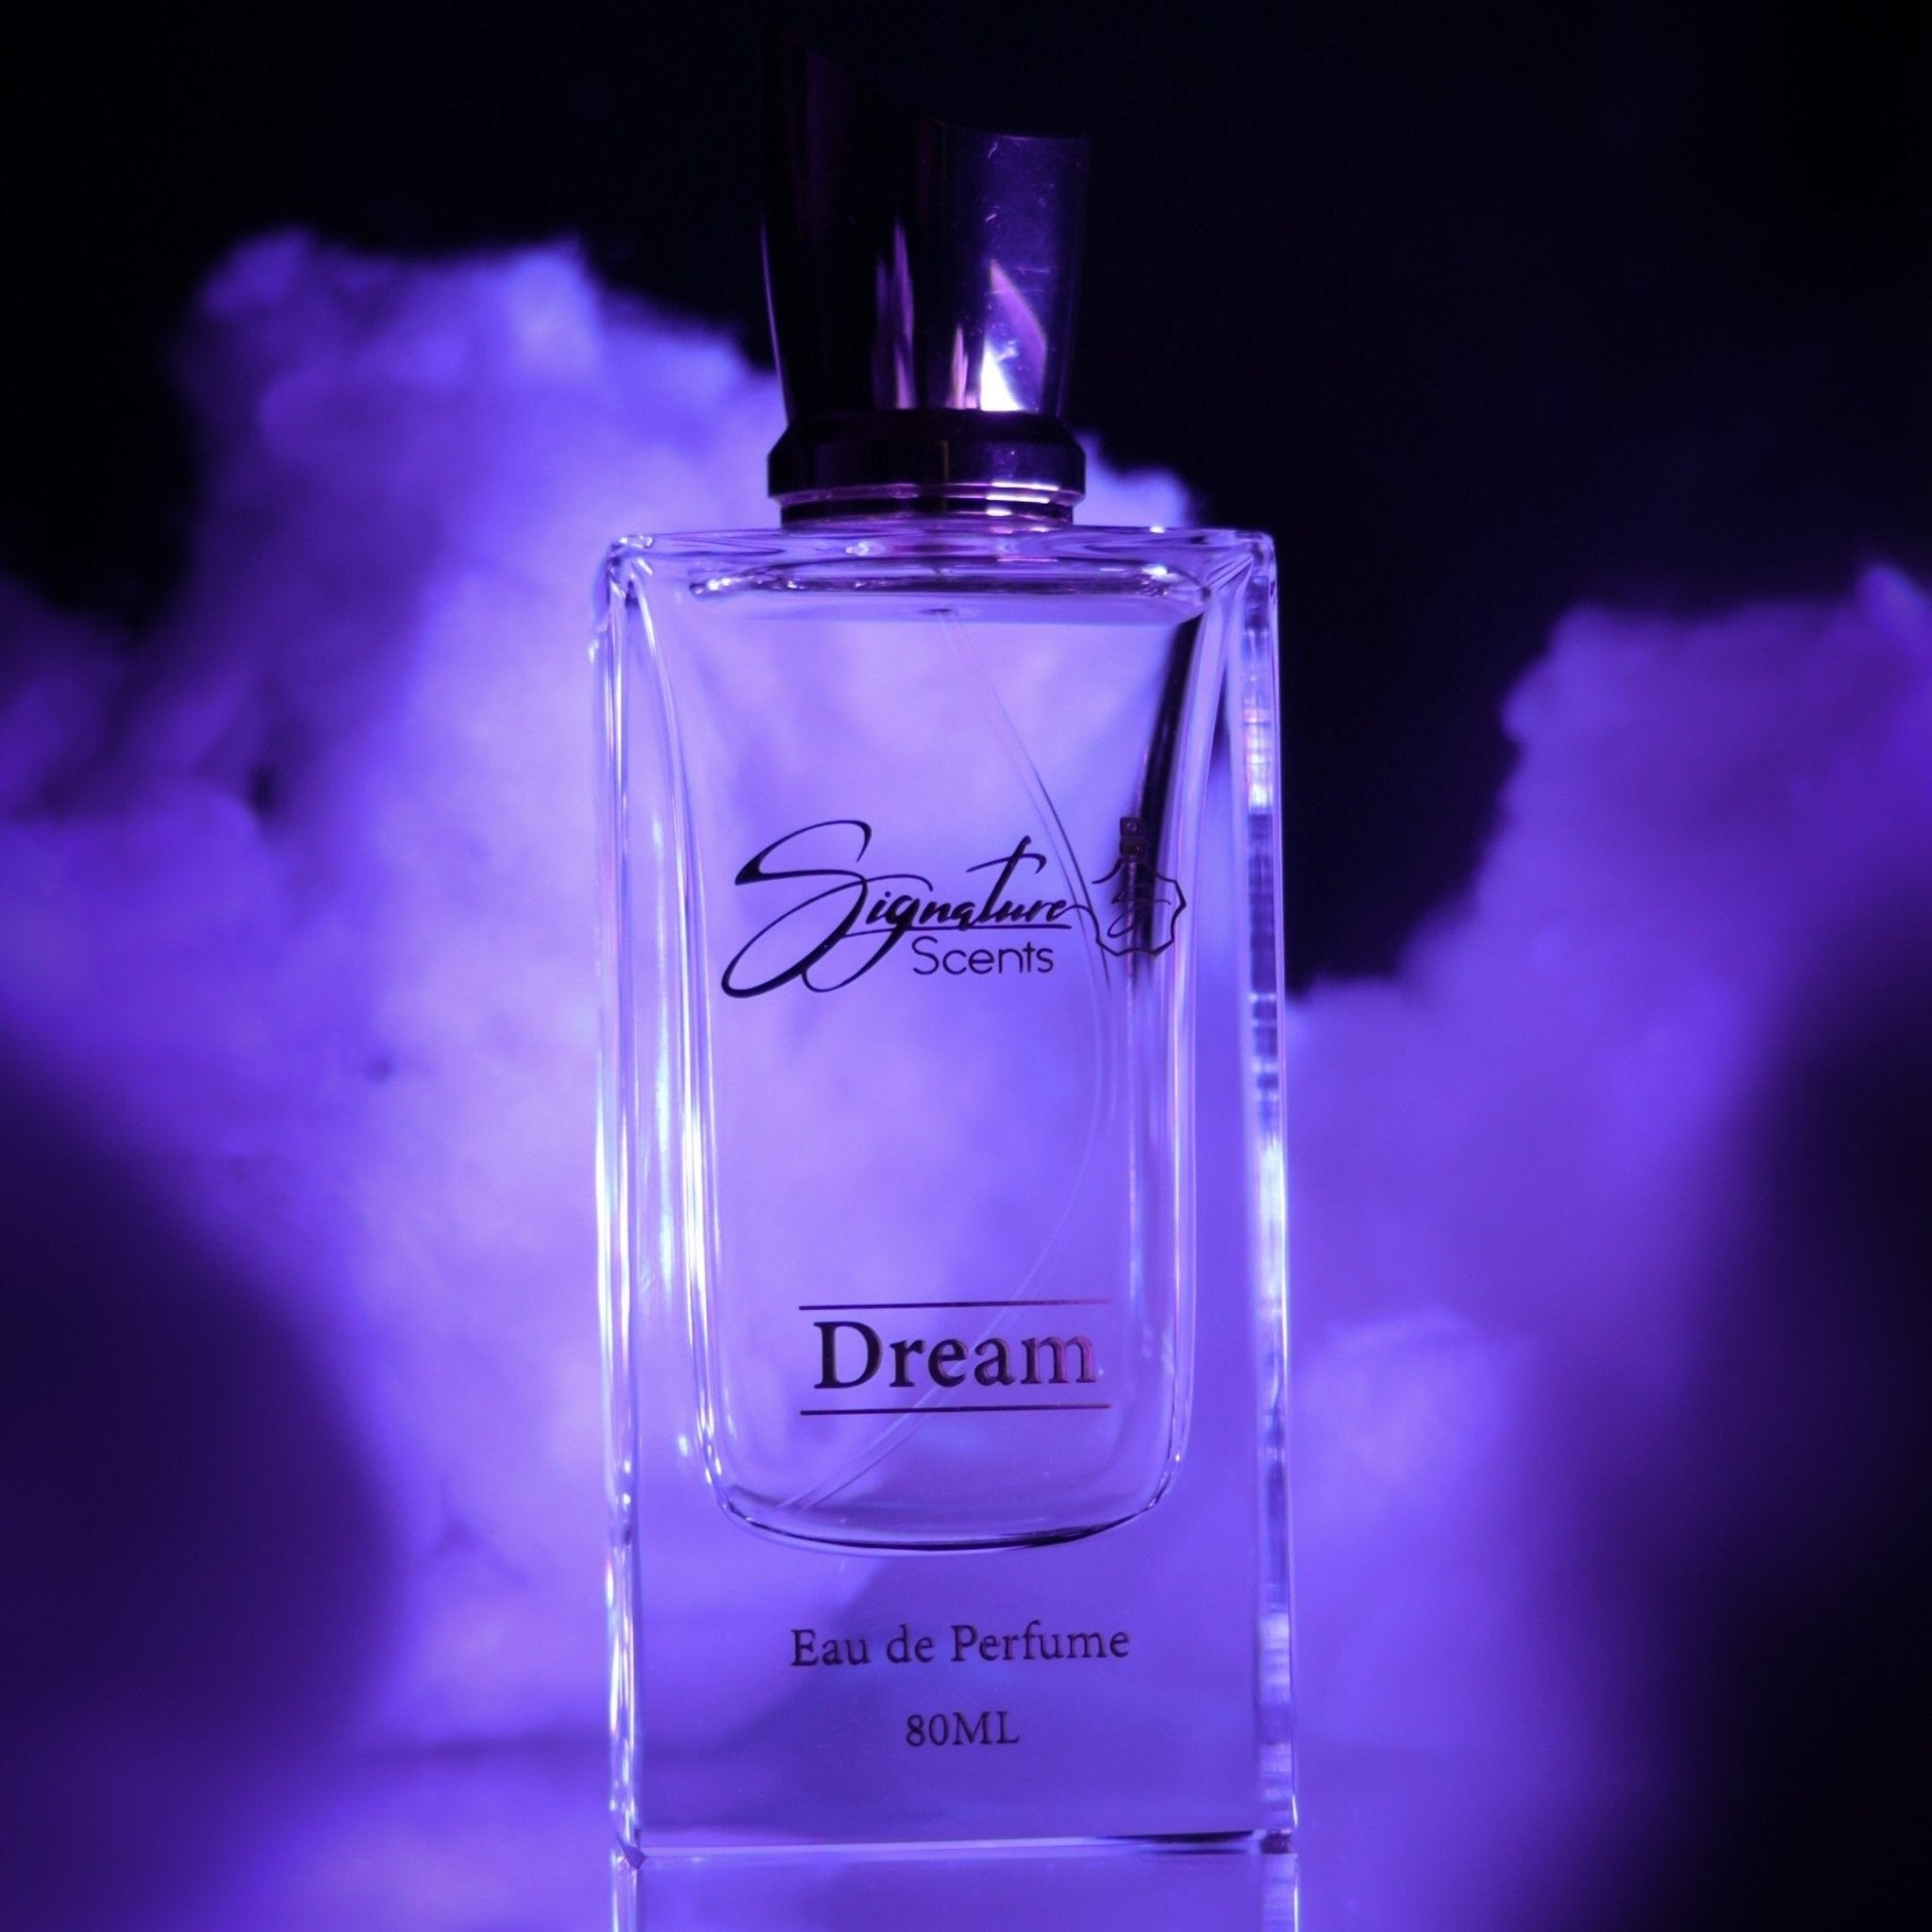 Signature Scents Dream Eau De Parfum 80ml - IZZAT DAOUK Lebanon